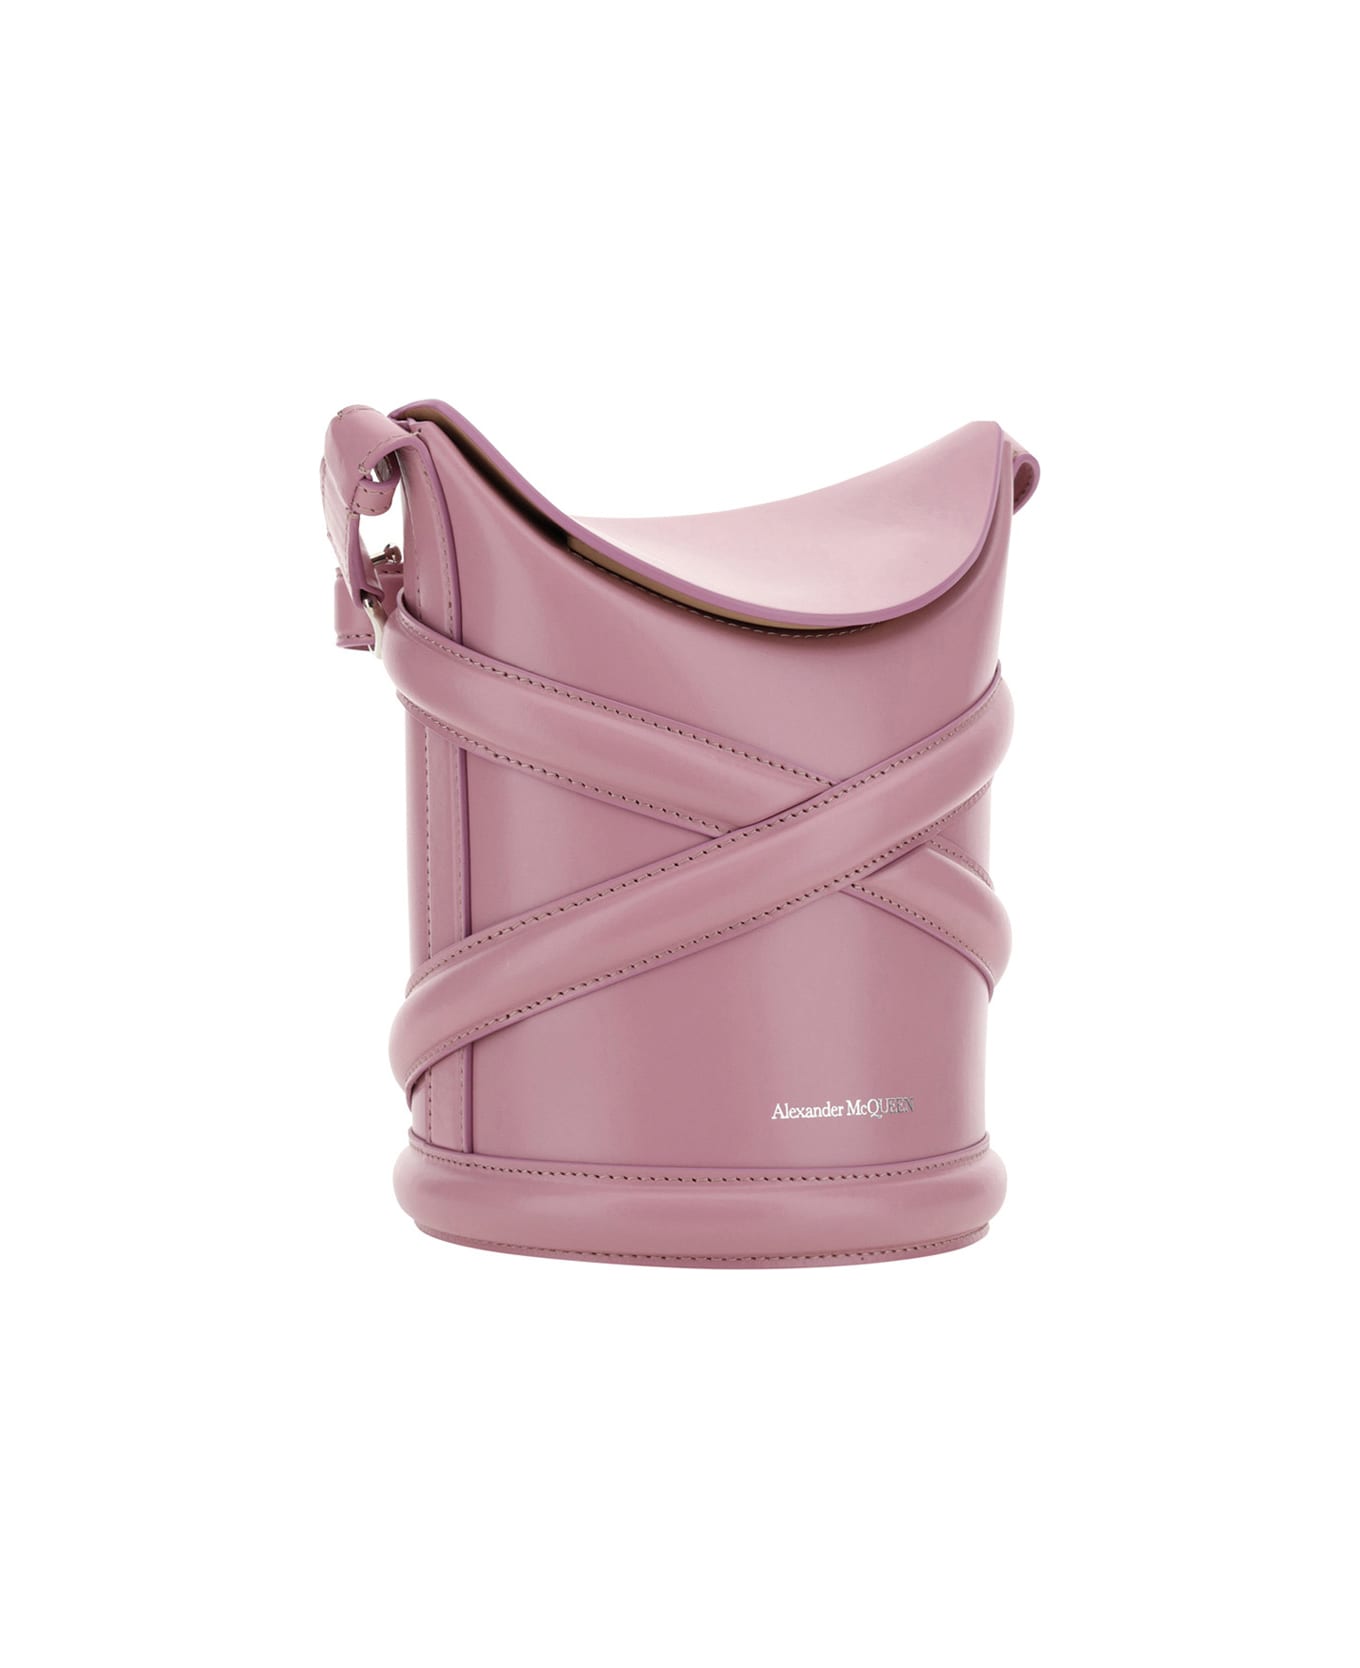 Alexander McQueen The Curve Bucket Bag - Pink